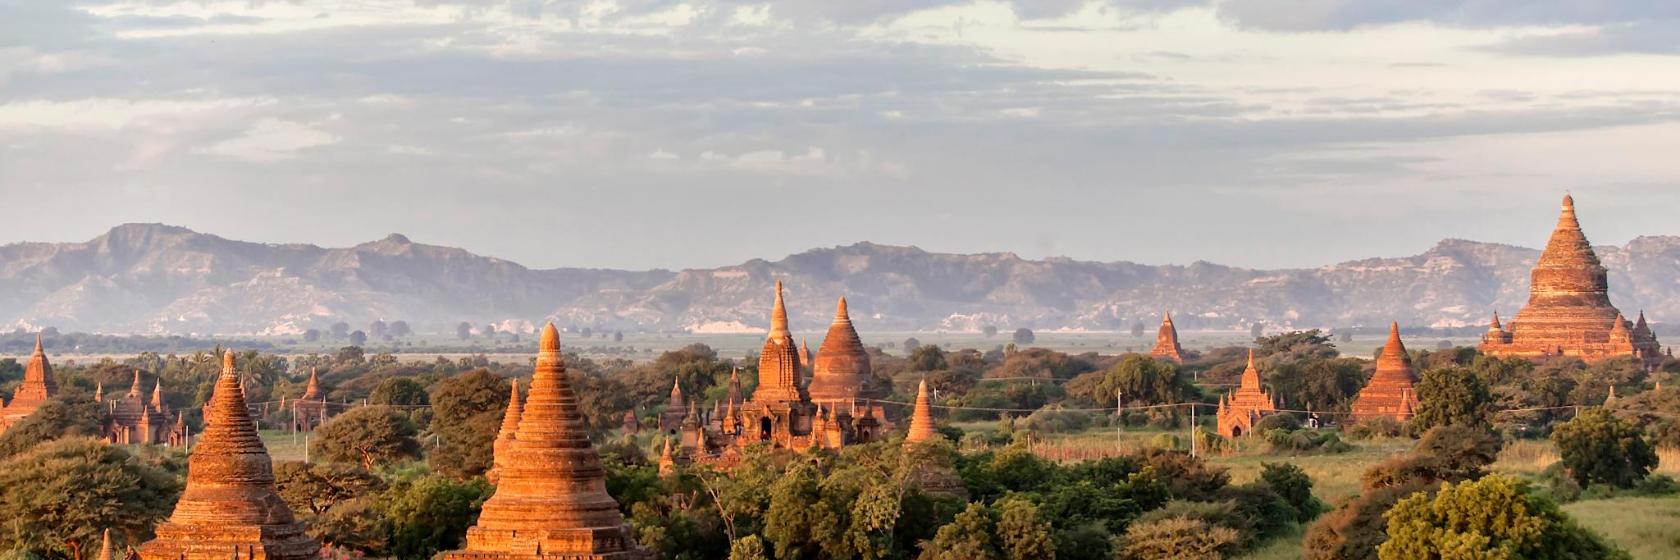 أفضل 10 فنادق في ميانمار - أماكن للإقامة في ميانمار